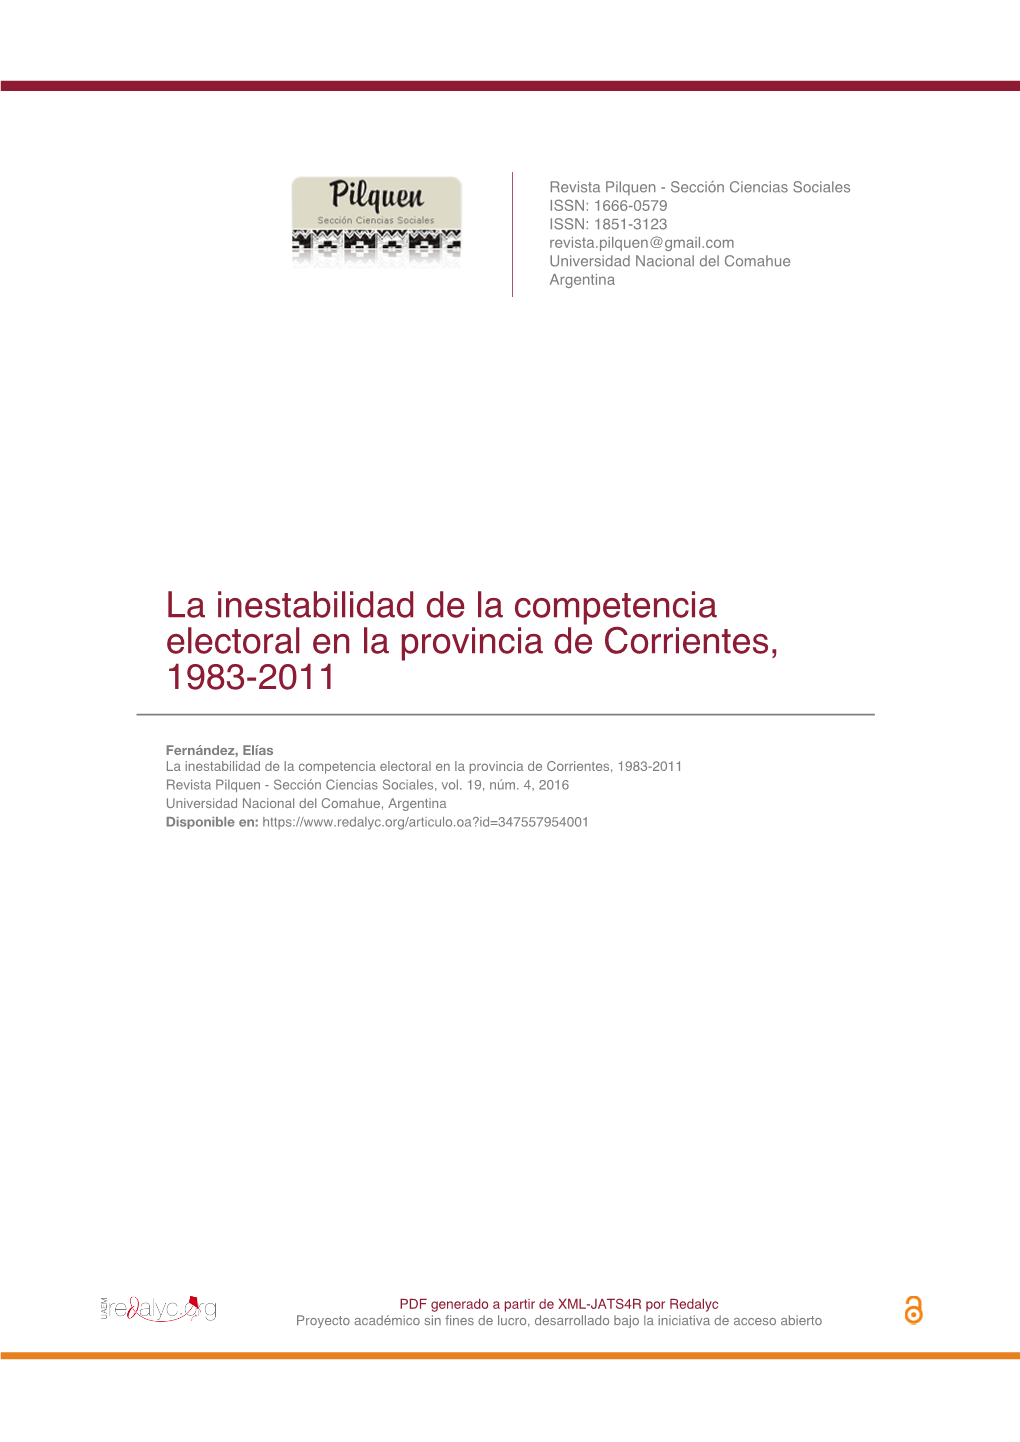 La Inestabilidad De La Competencia Electoral En La Provincia De Corrientes, 1983-2011